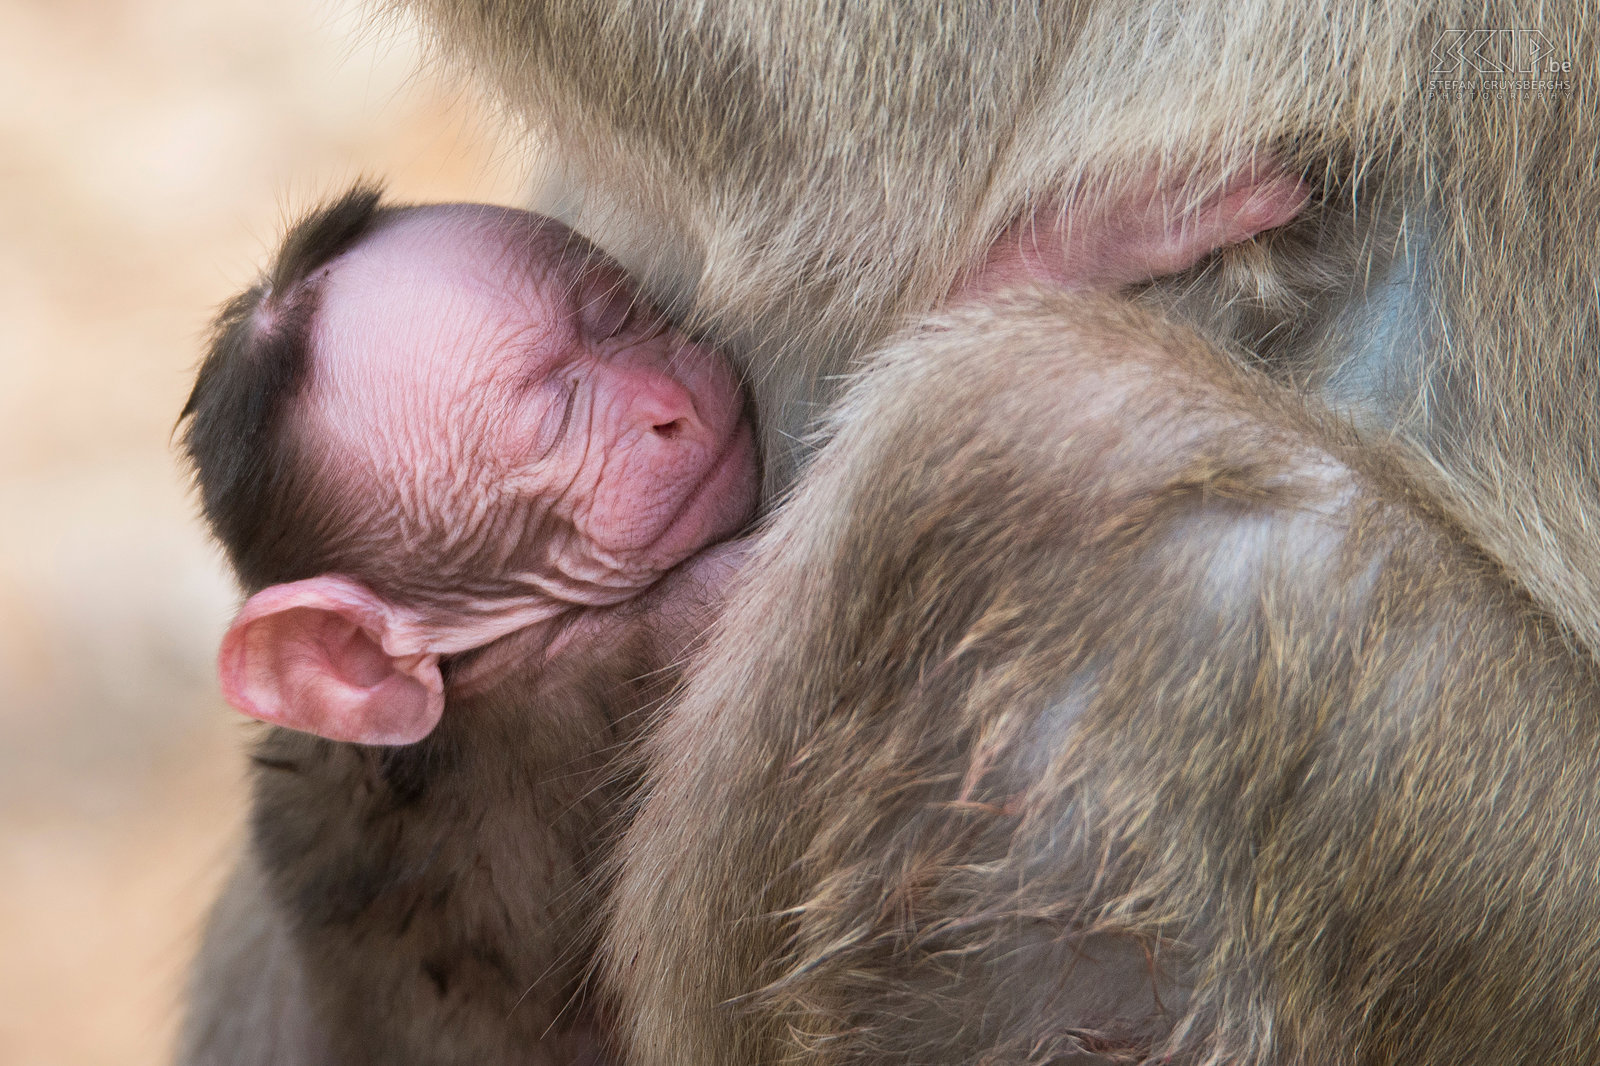 Kabini - Indische kroonaap baby Closeup van een pasgeboren Indische kroonaap (Bonnet macaque, Macaca radiata) in het wild. Stefan Cruysberghs